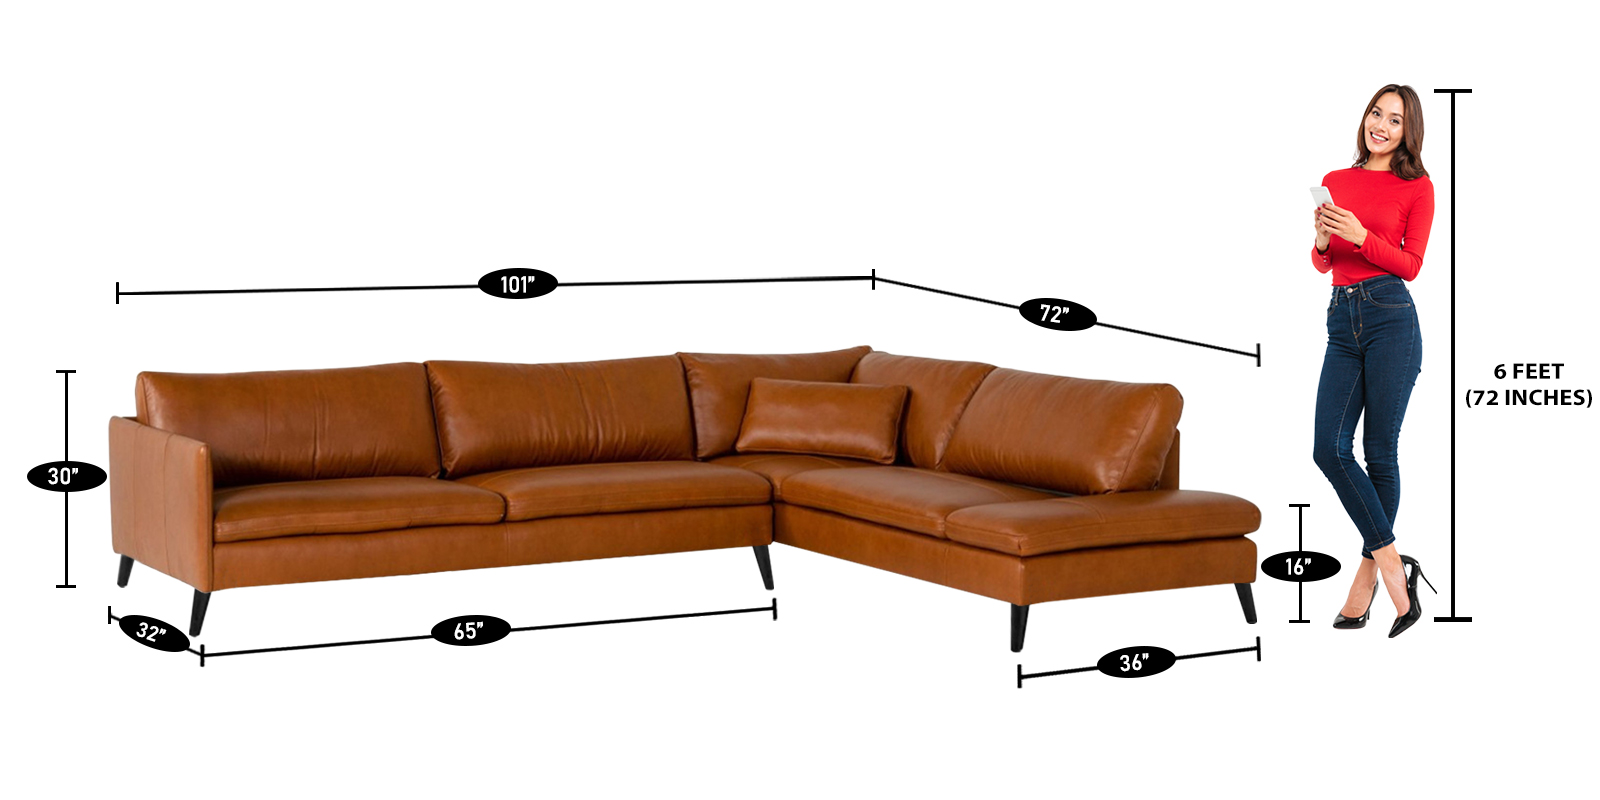 Enormous Lhs Sofa In Tan Brown Colour